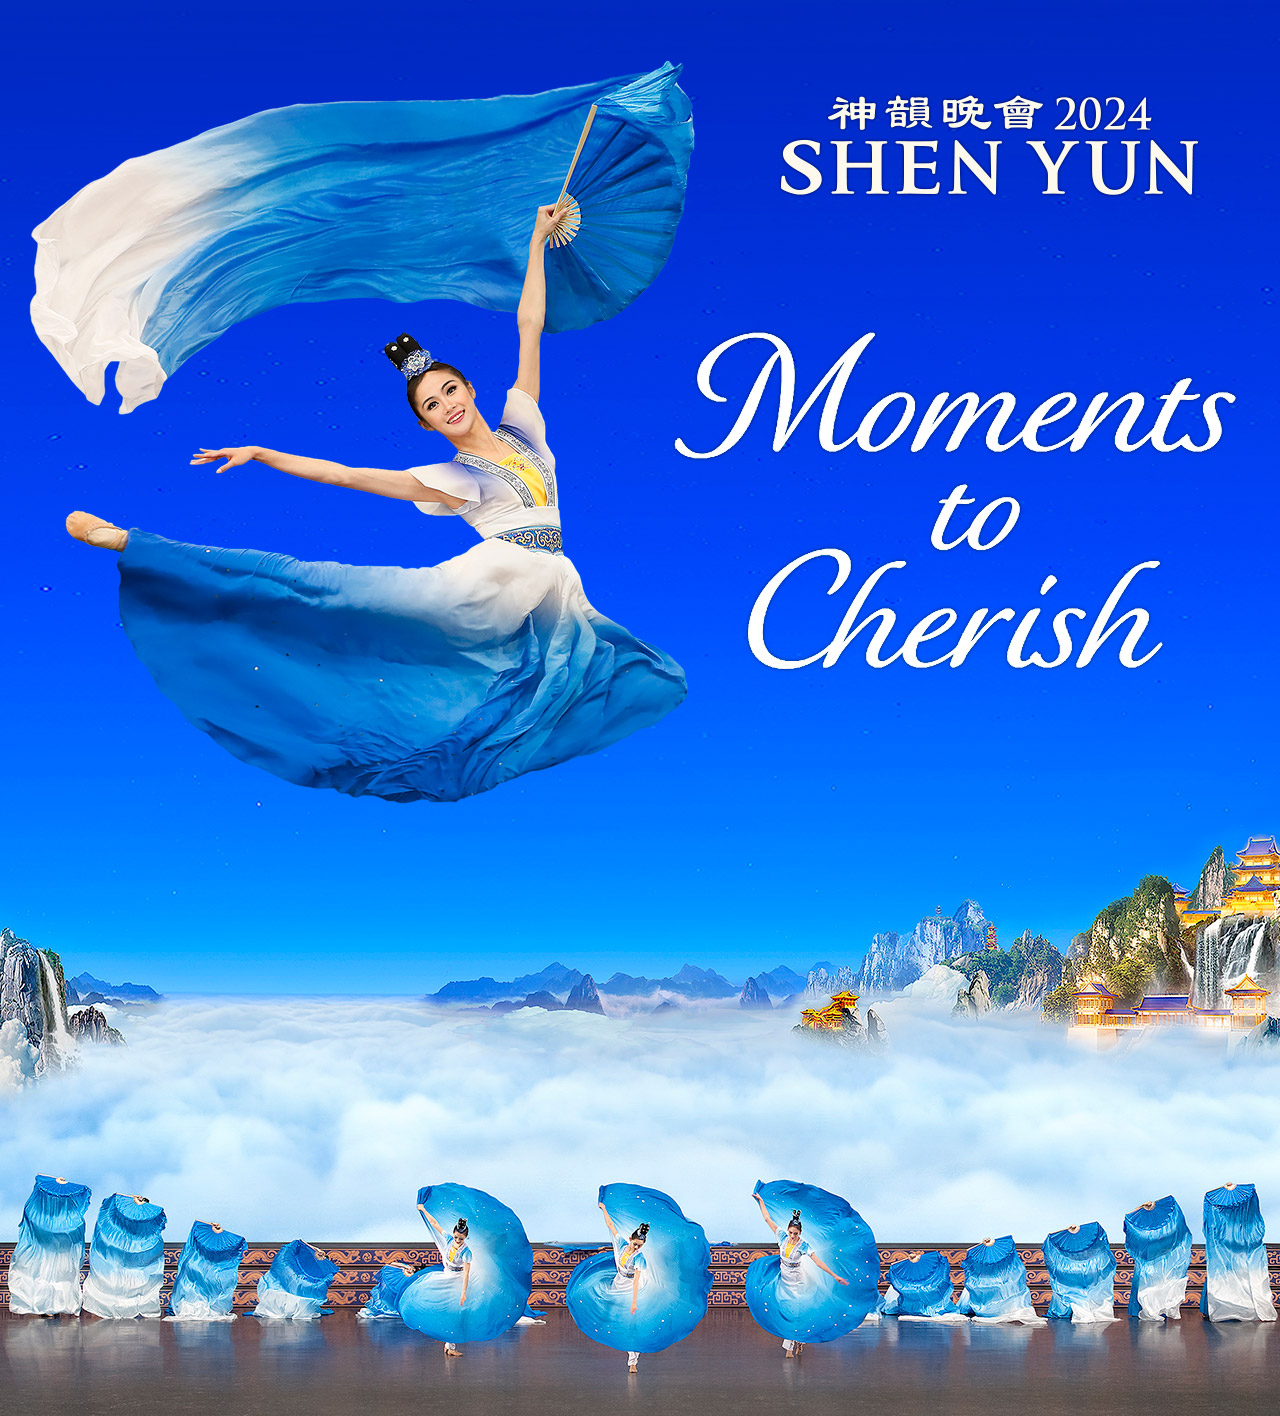 SHEN YUN - Moments to Cherish